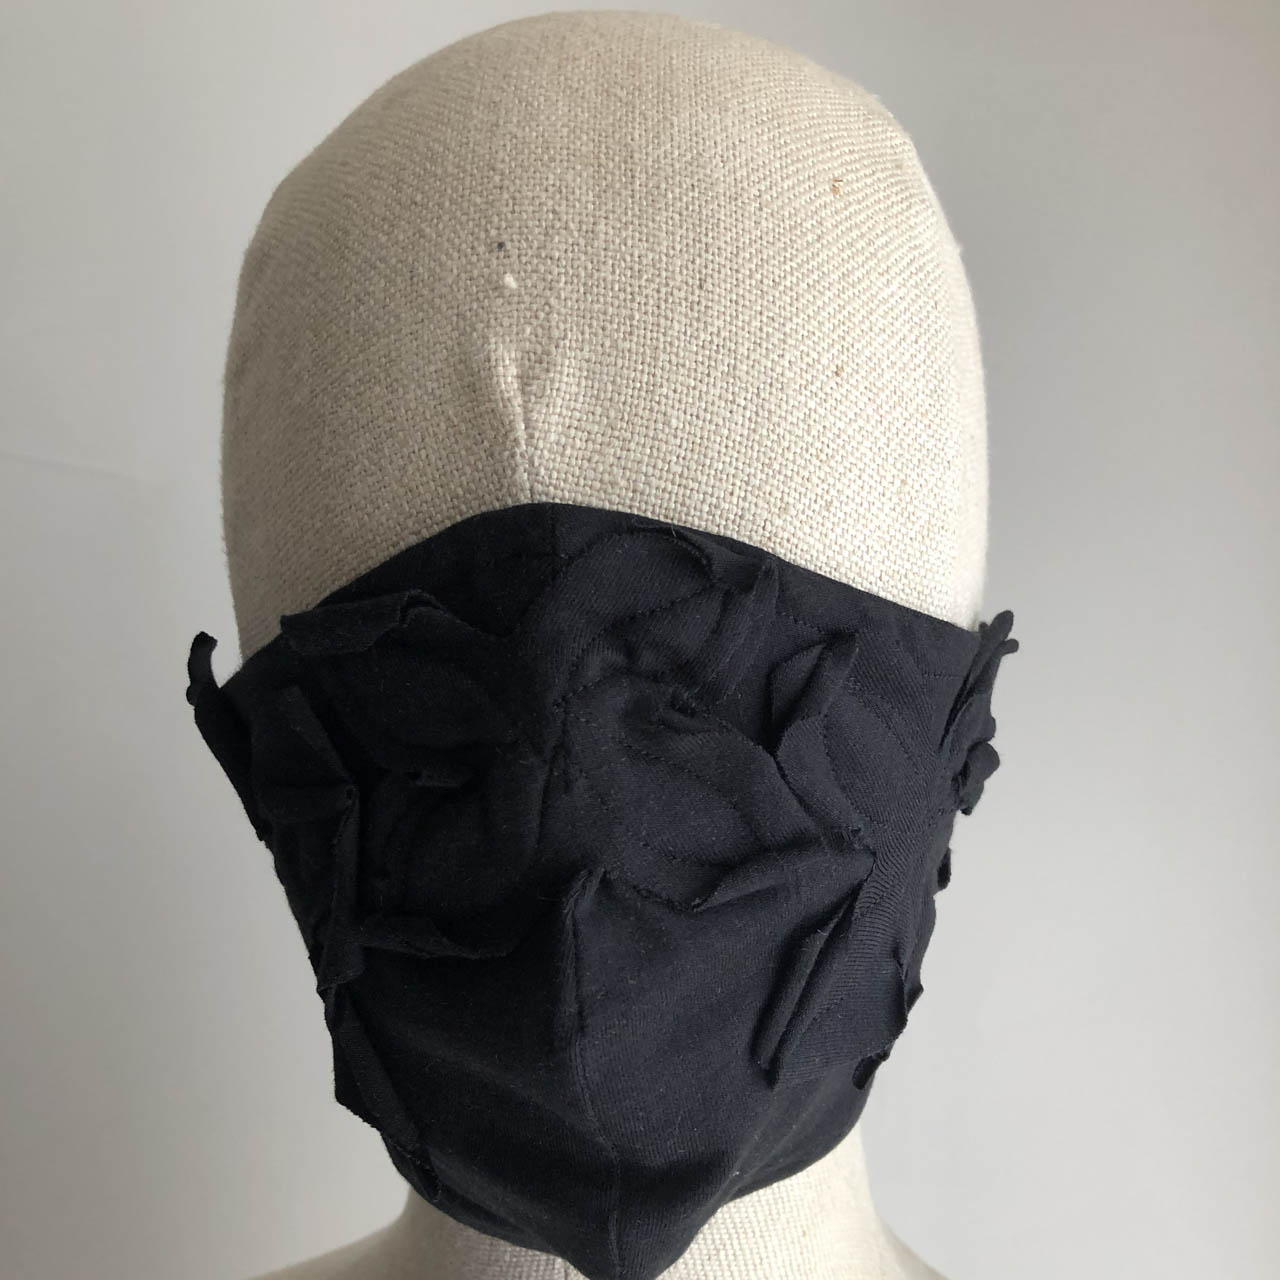 black mask - floral design - $15 AUD plus post